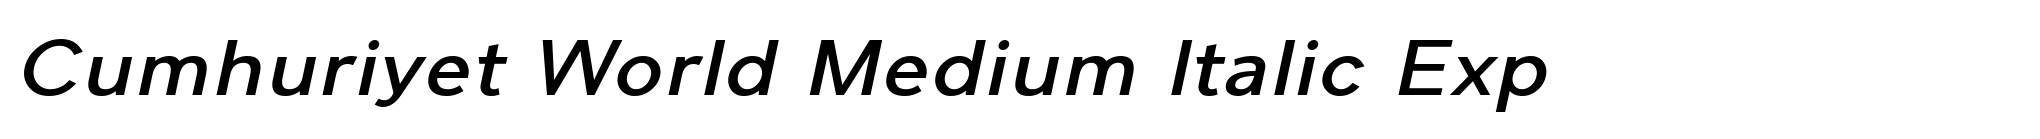 Cumhuriyet World Medium Italic Exp image